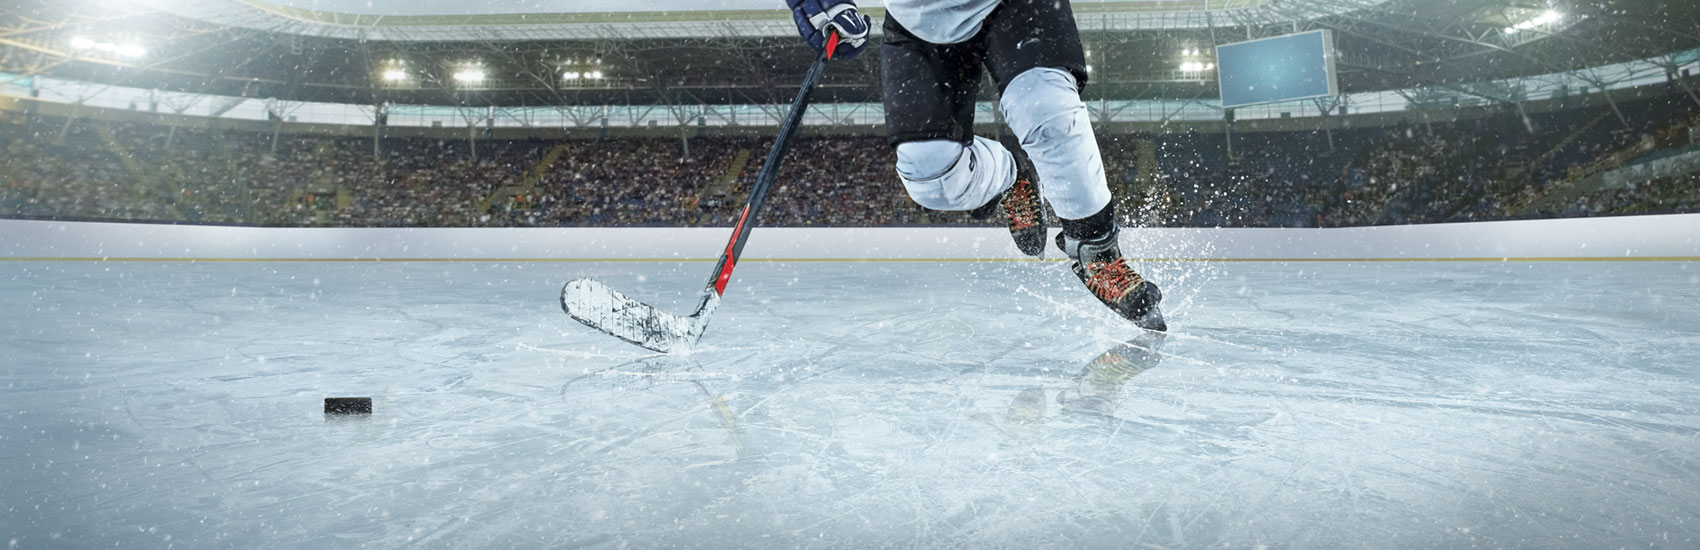 Les Championnats provinciaux de hockey scolaire en cours à Châteauguay et Vaudreuil-Dorion